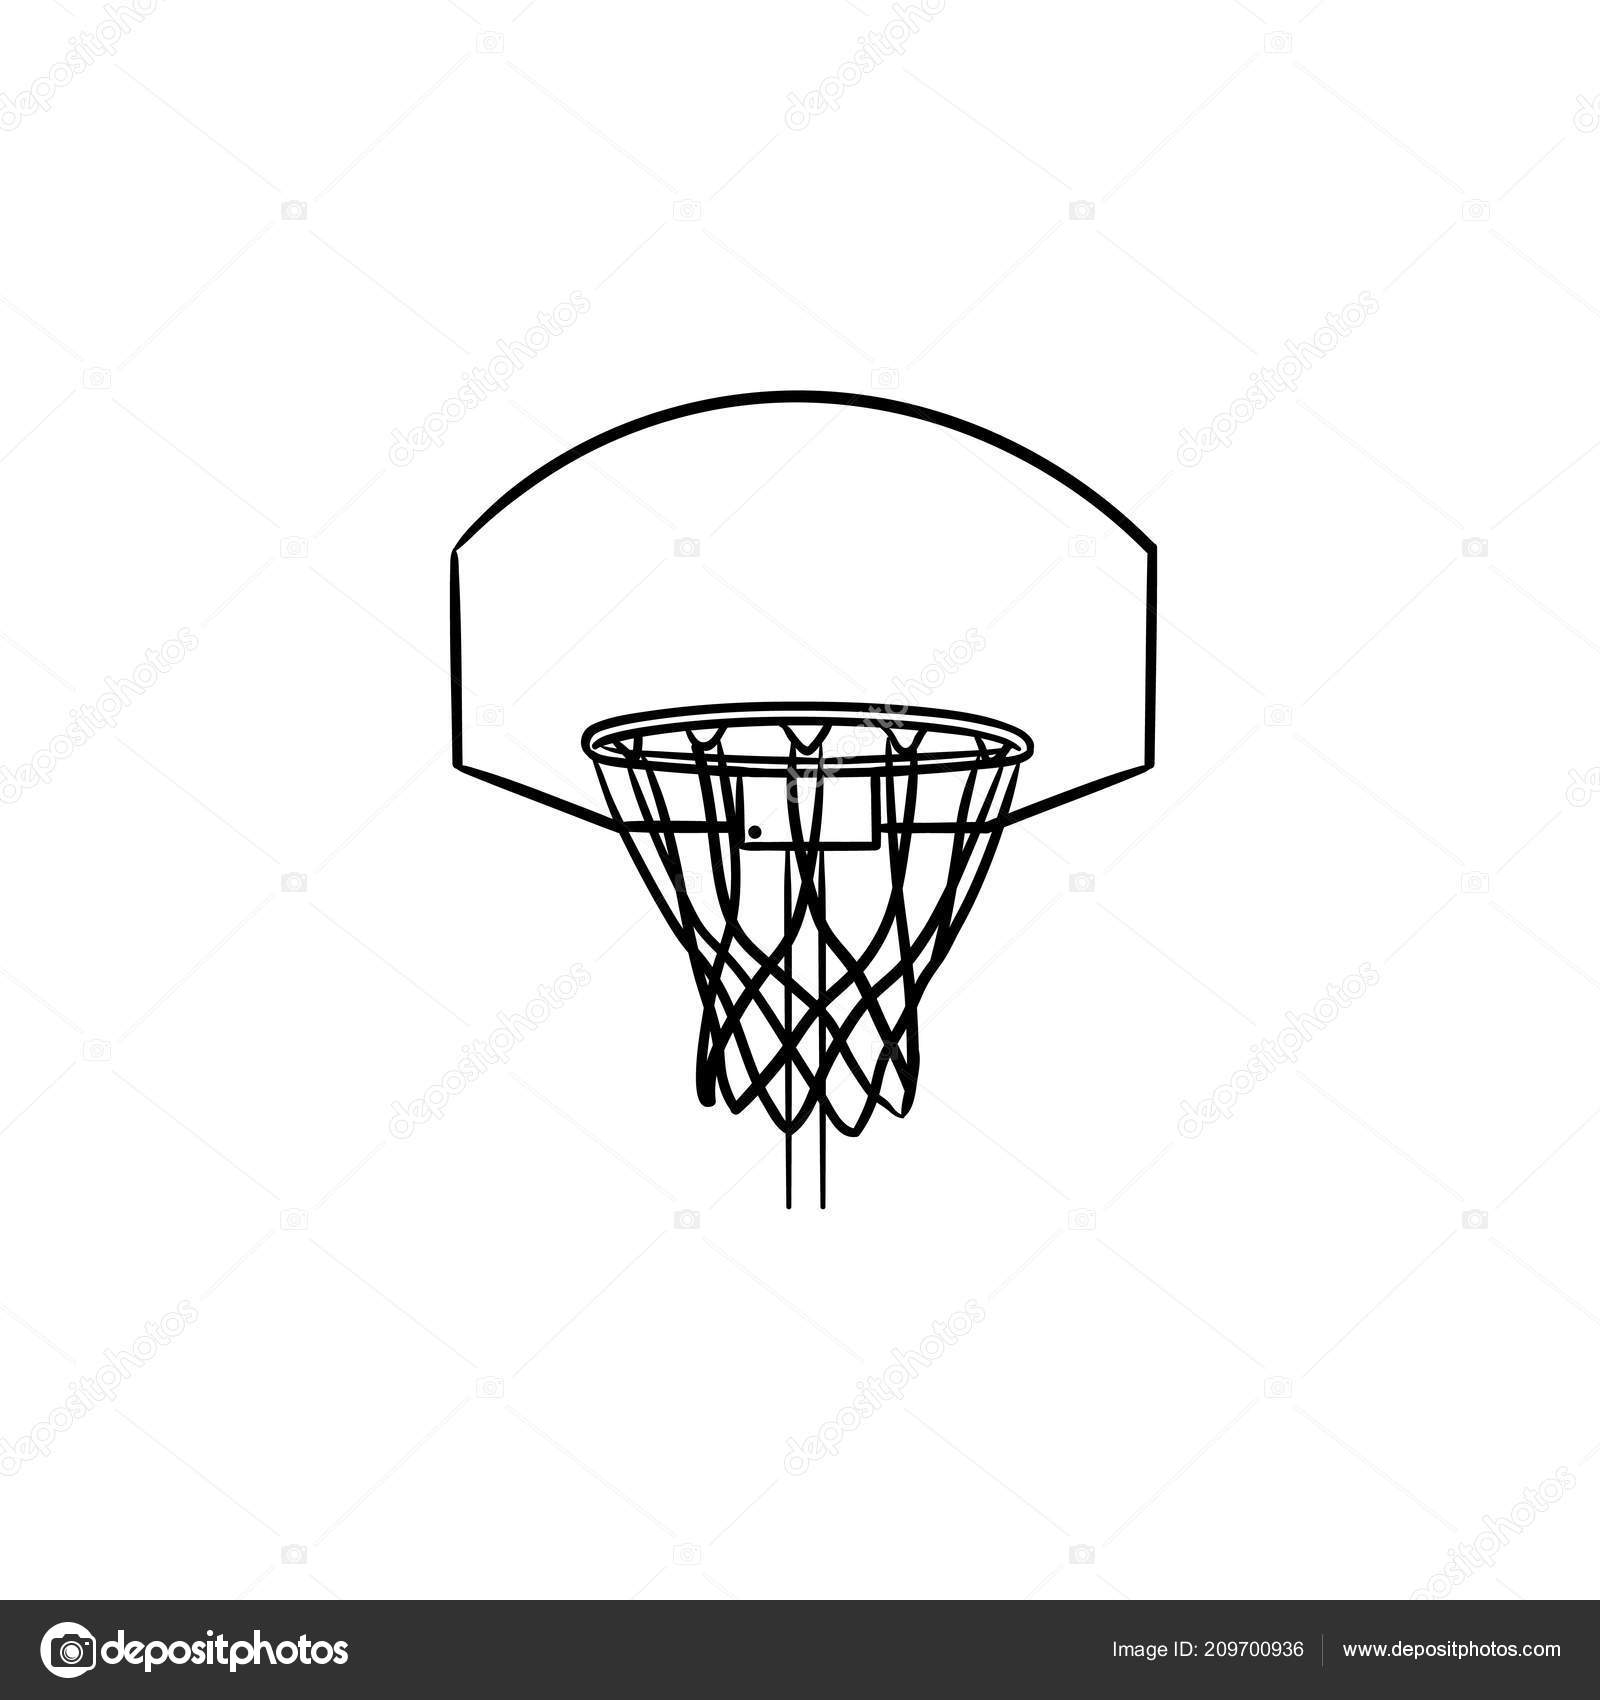 Aro de baloncesto y red icono de doodle contorno dibujado ...